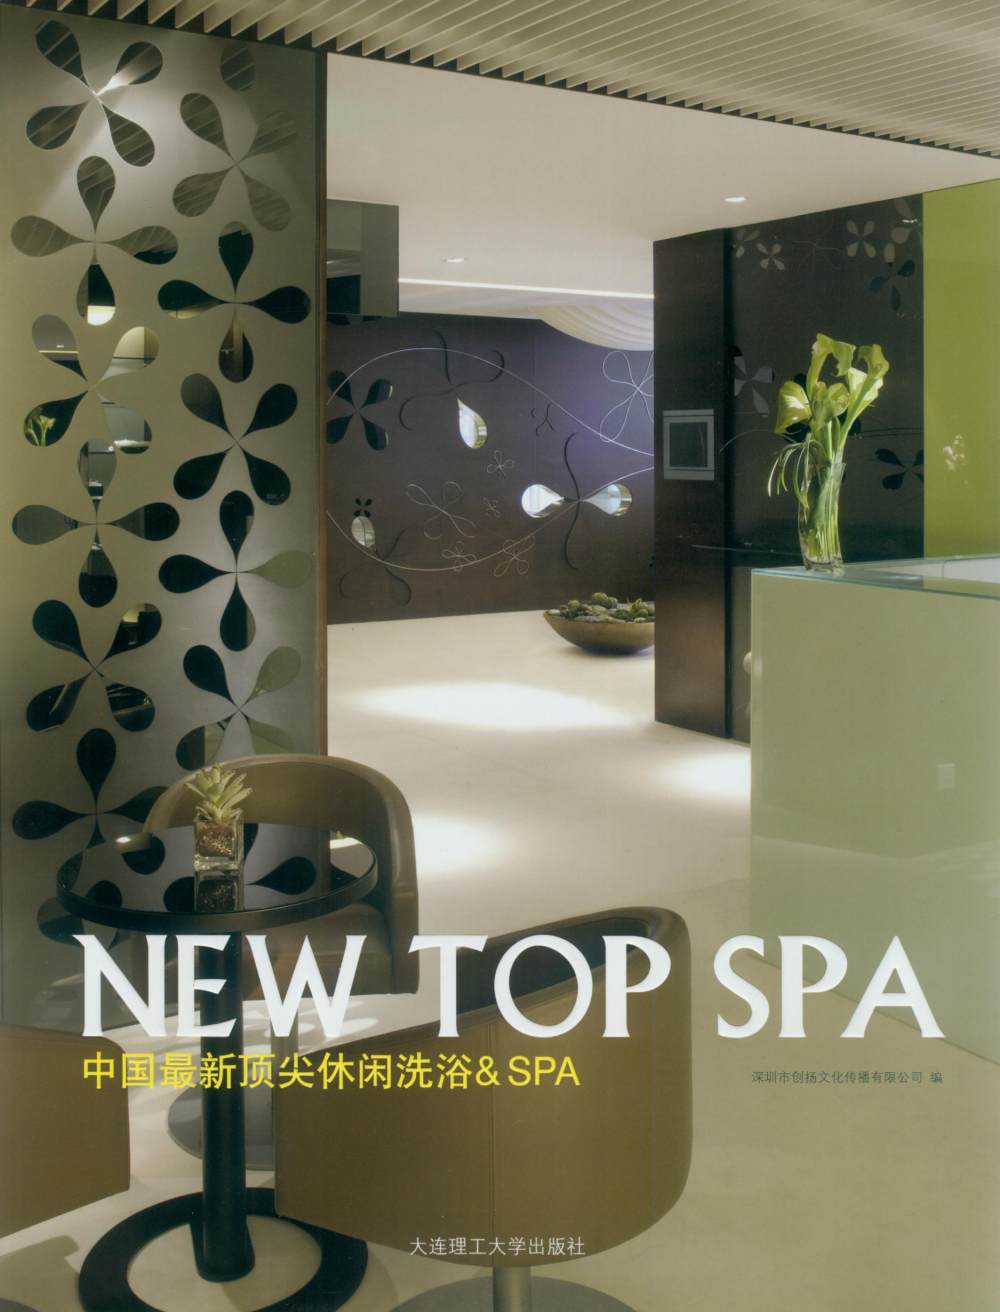 中国最新顶尖休闲洗浴&SPA_001.jpg